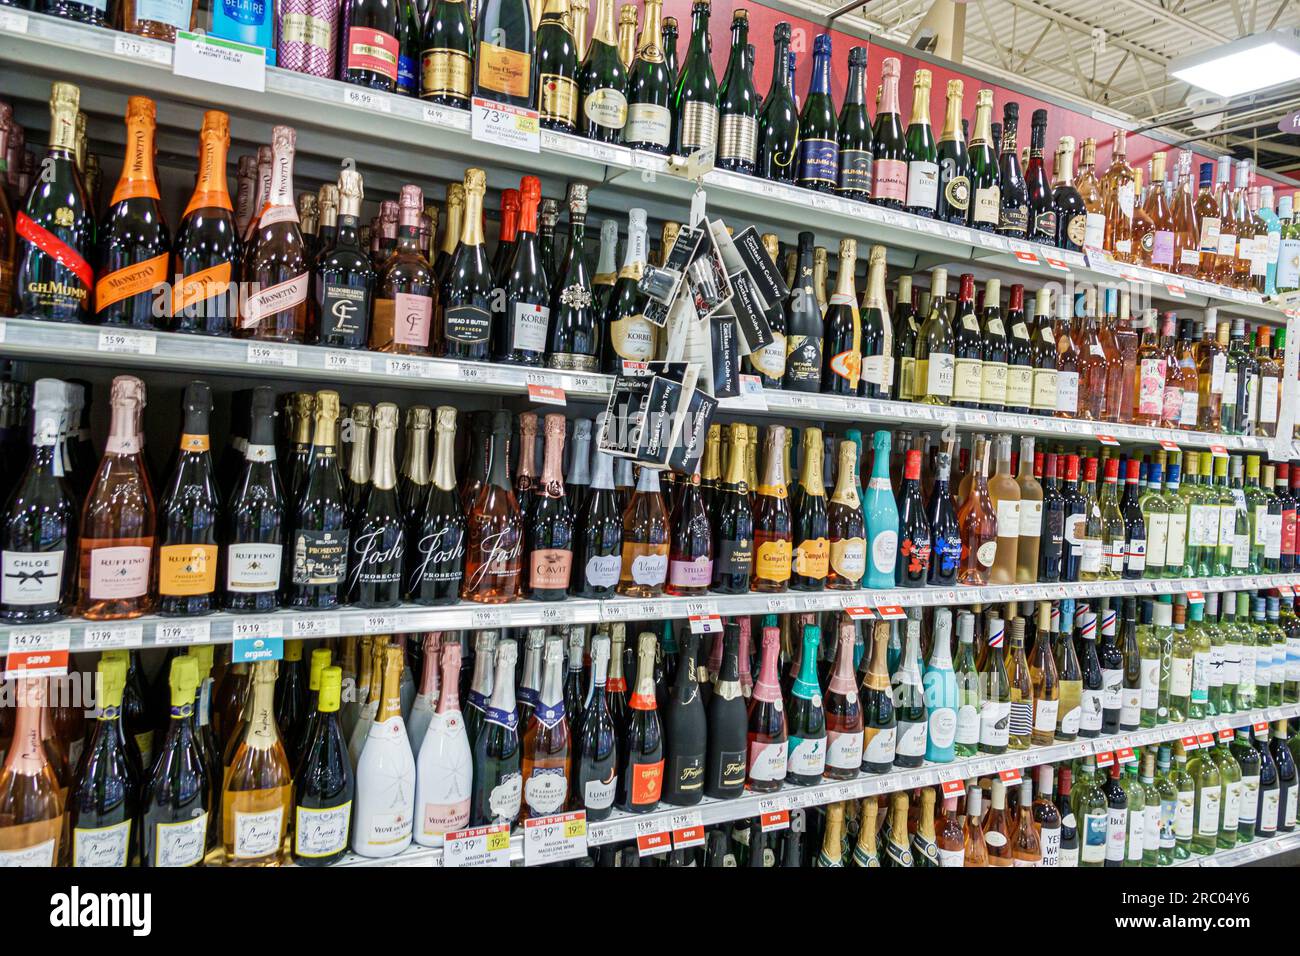 Sandy Springs Atlanta Florida, supermercato Publix Grocery Store, interno, scaffali bevande alcoliche Foto Stock